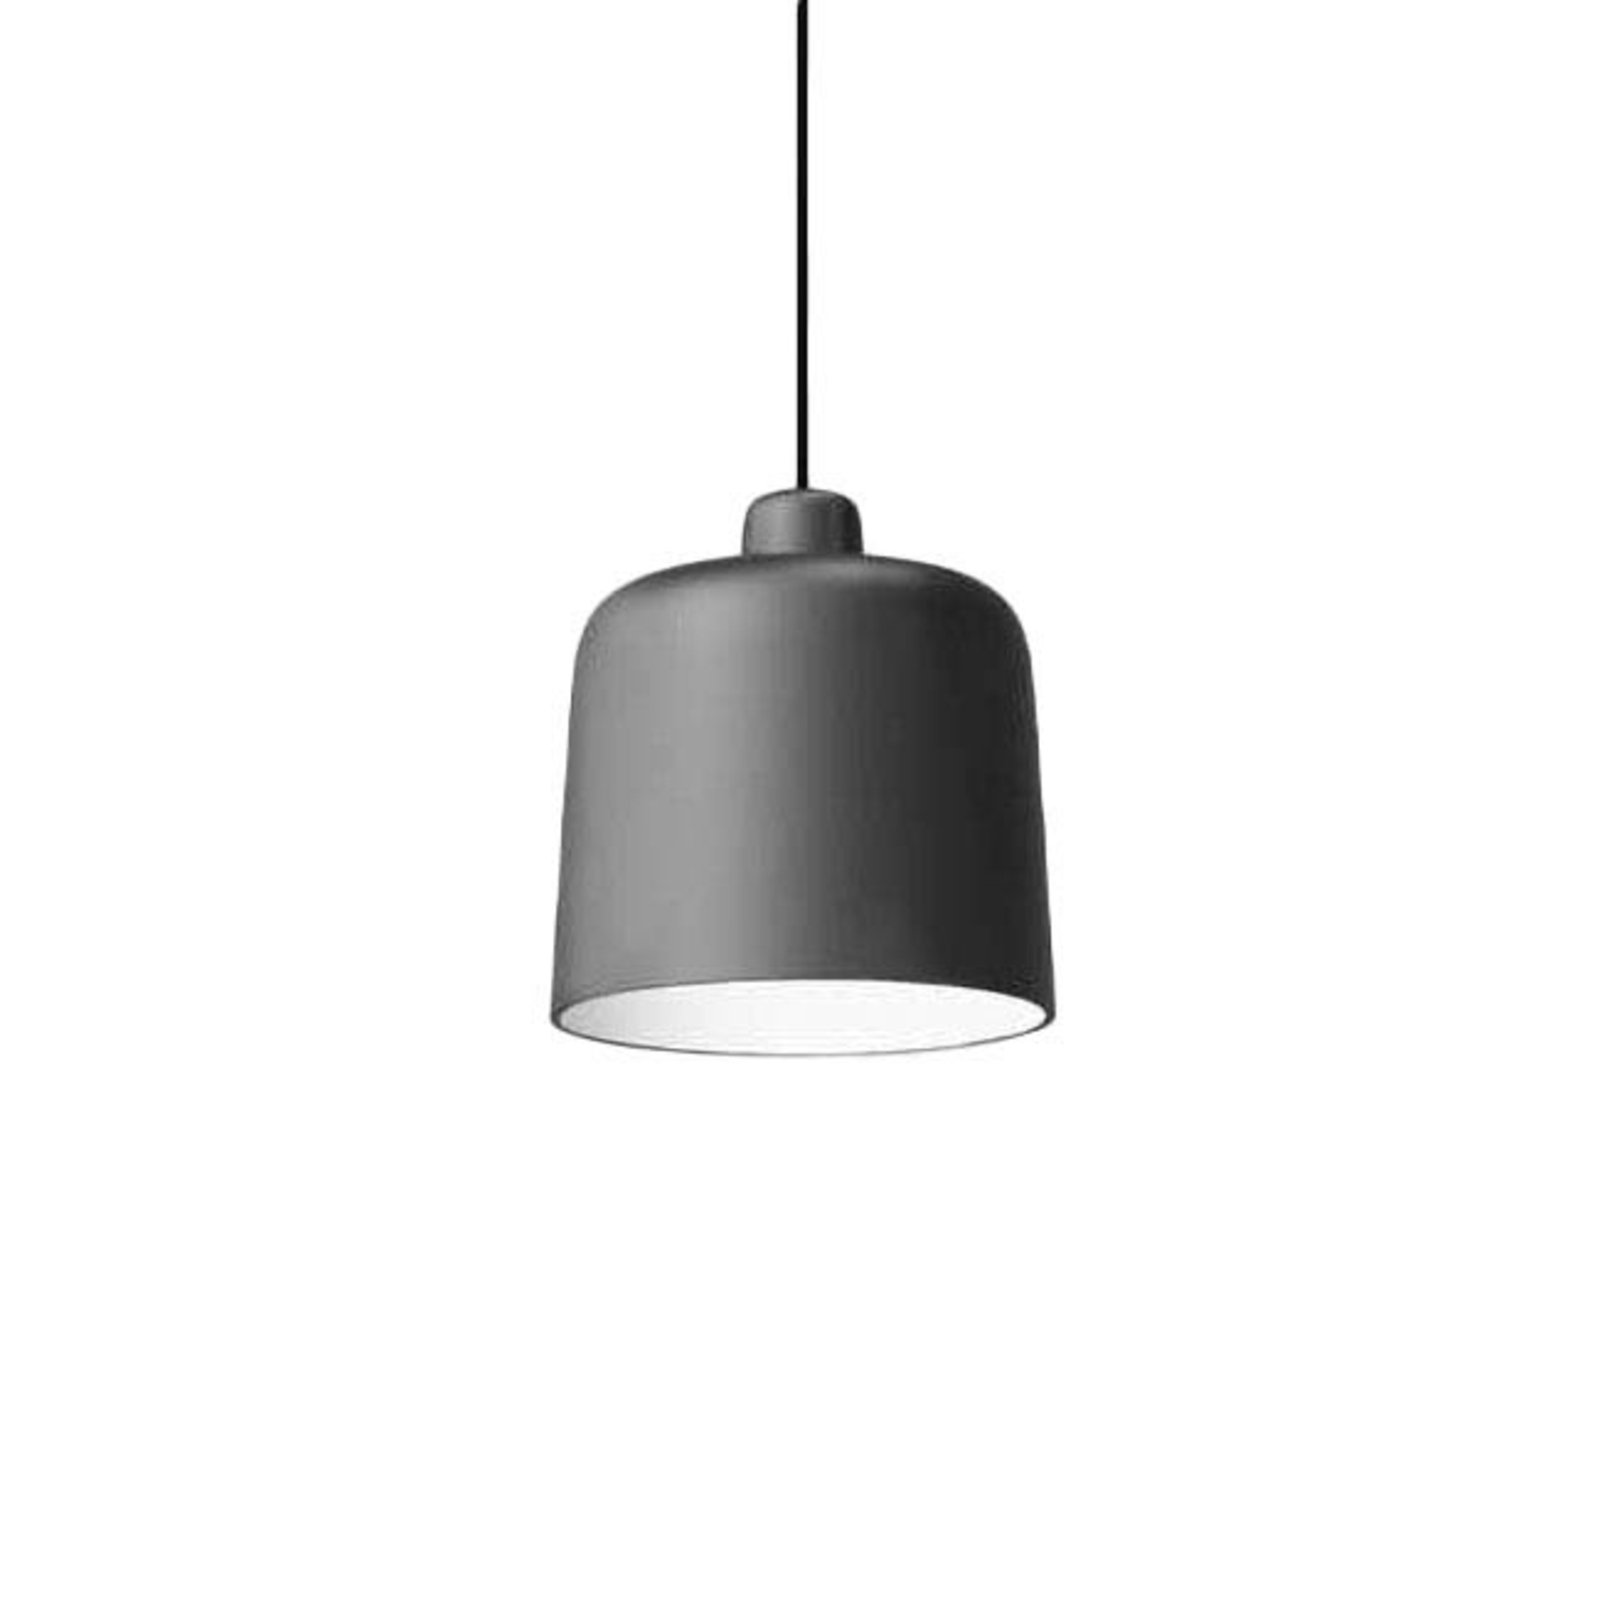 Luceplan lampada a sospensione Zile nero opaco, Ø 20 cm